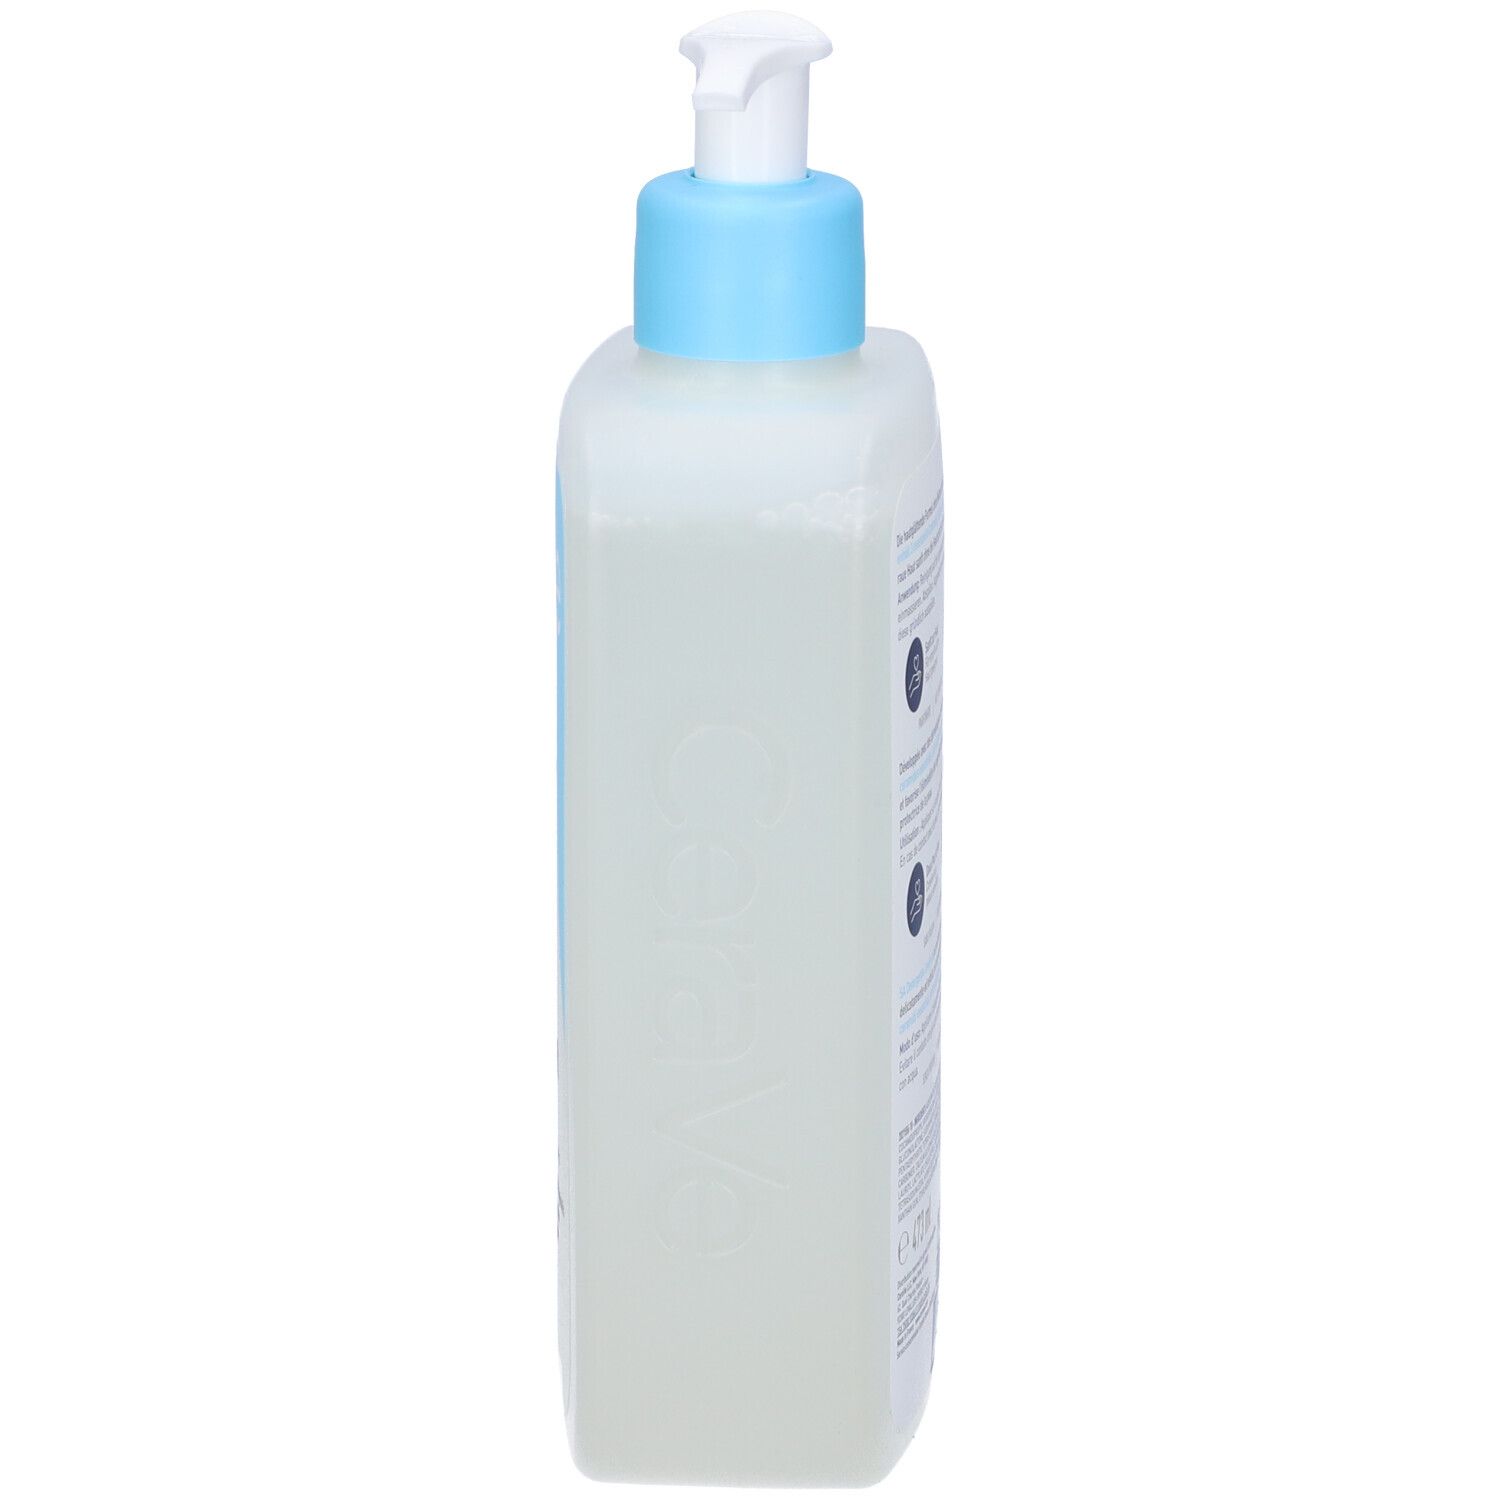 CeraVe Detergente con texture gel non schiumoso che deterge, esfolia e leviga la pelle, proteggendola 473 ml